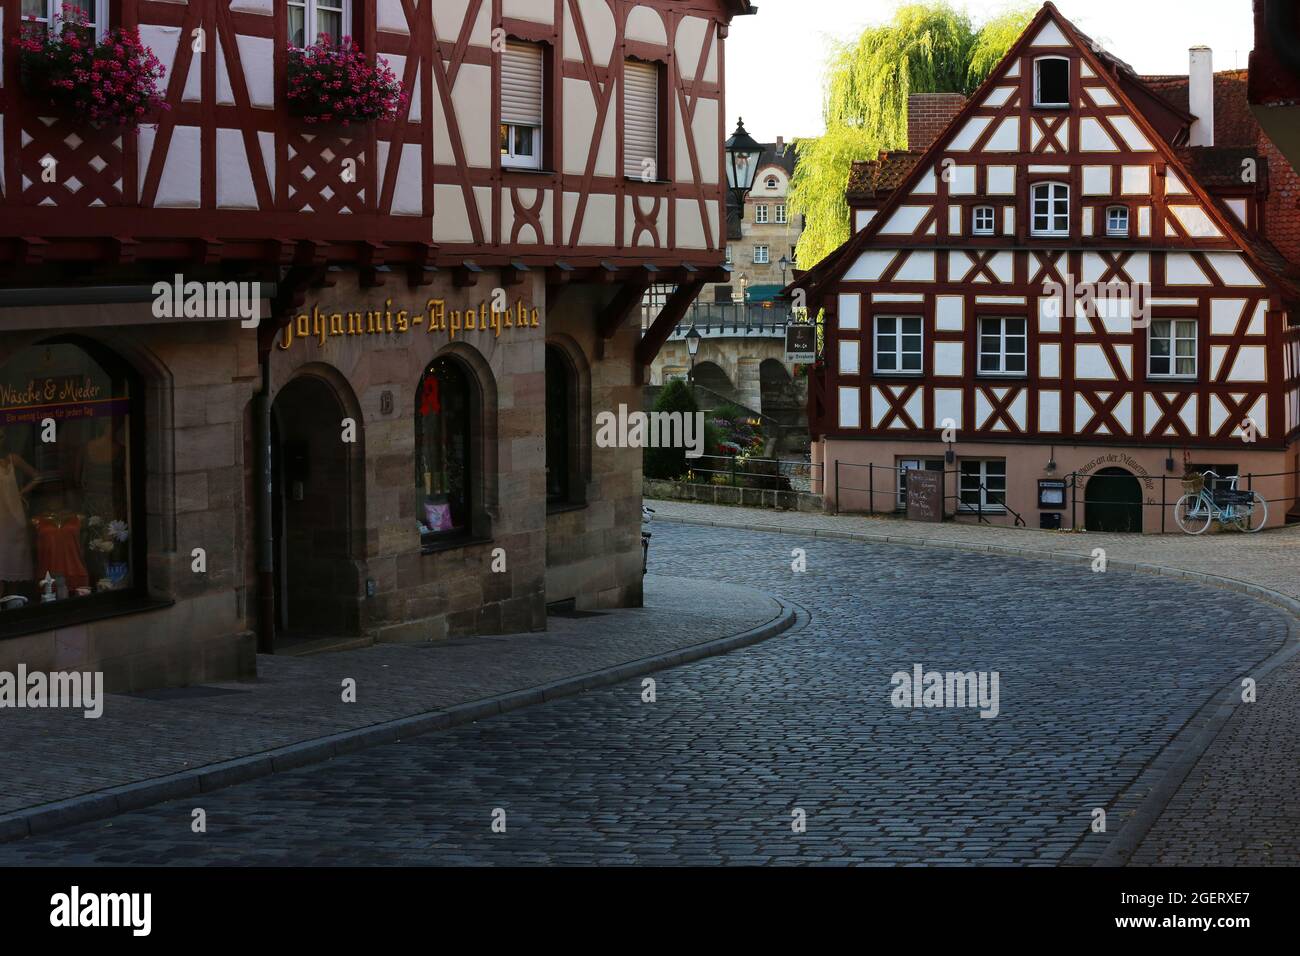 Lauf bei Nürnberg mit Altstadt oder Innenstadt mit Fachwerkhäuser Foto Stock